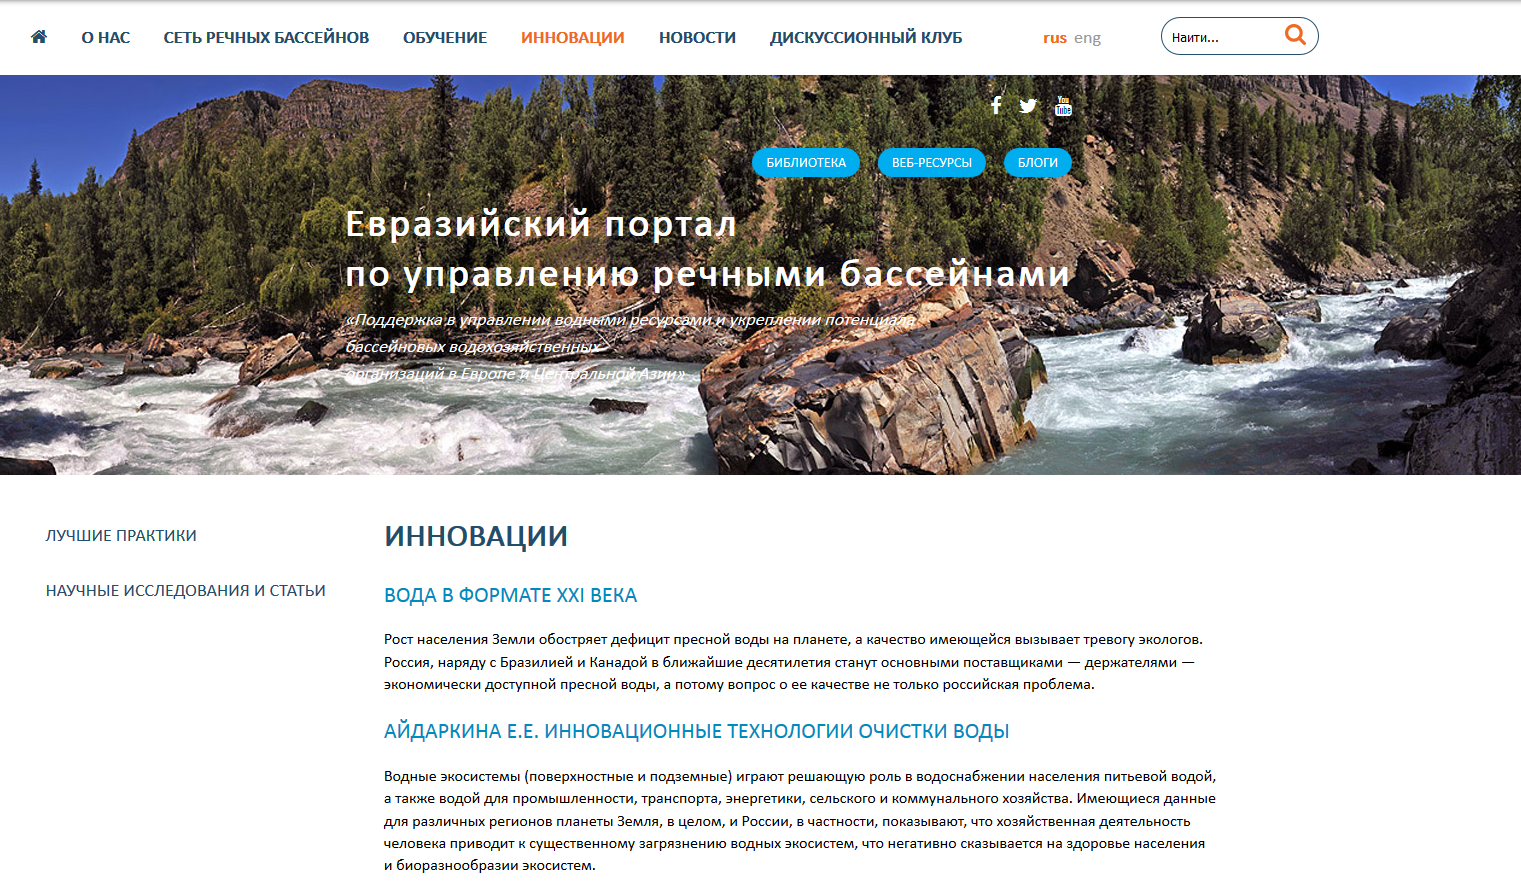 евразийский портал по управлению речными бассейнами